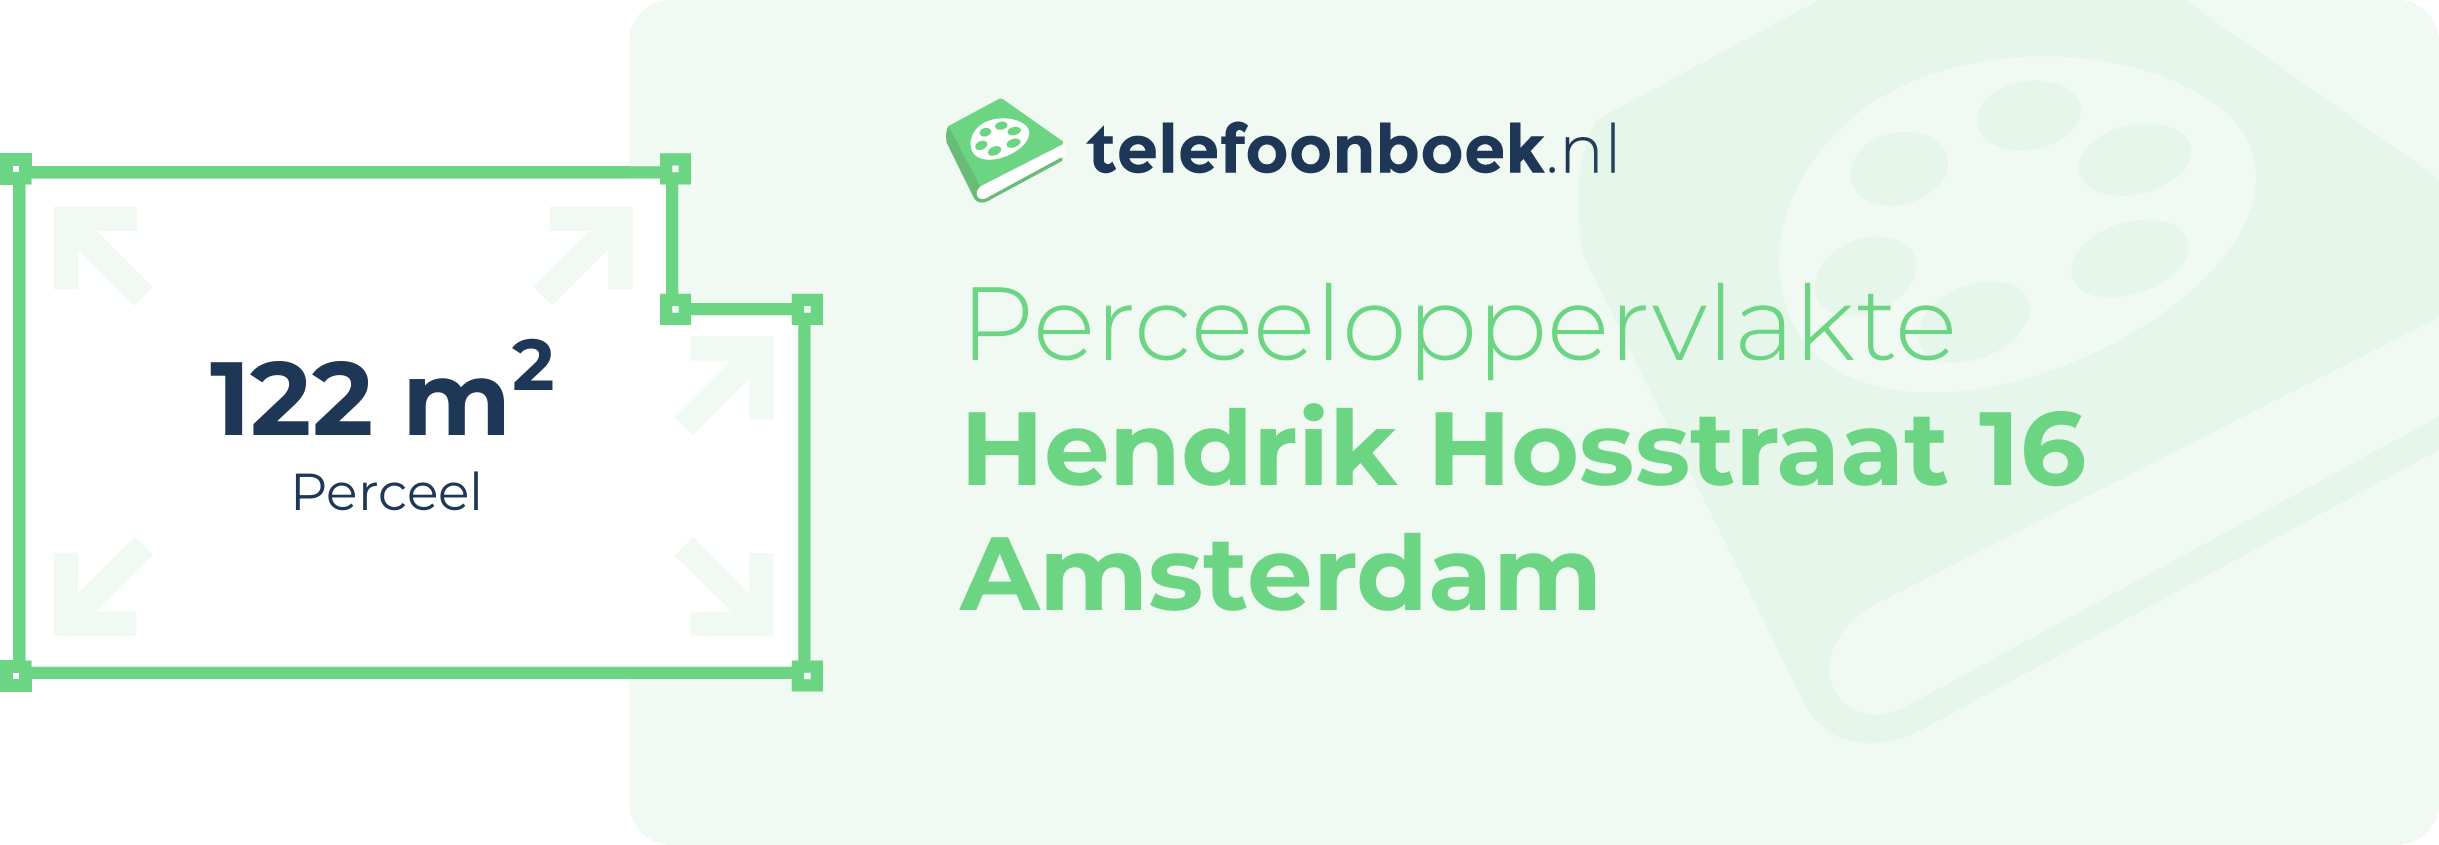 Perceeloppervlakte Hendrik Hosstraat 16 Amsterdam